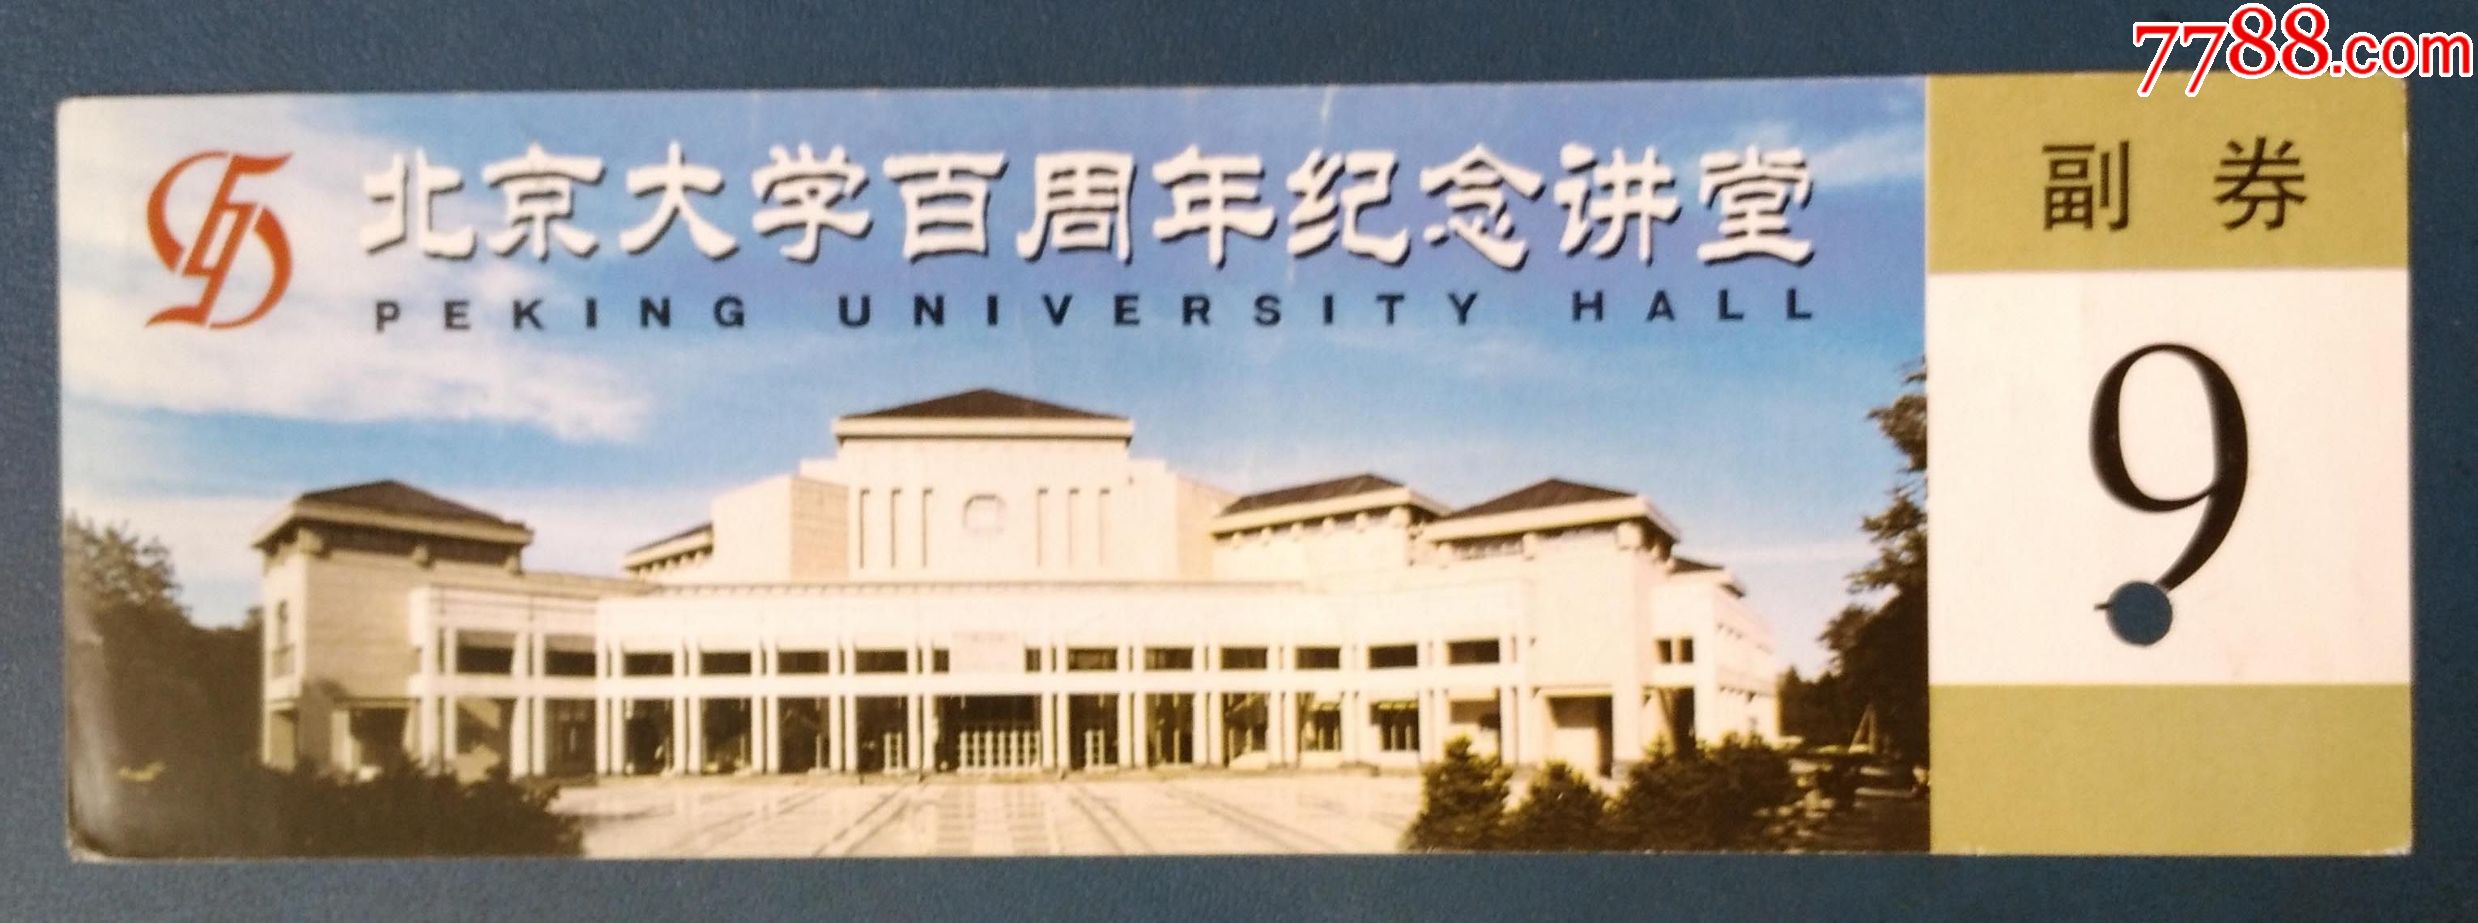 北京大学百年纪念讲堂.